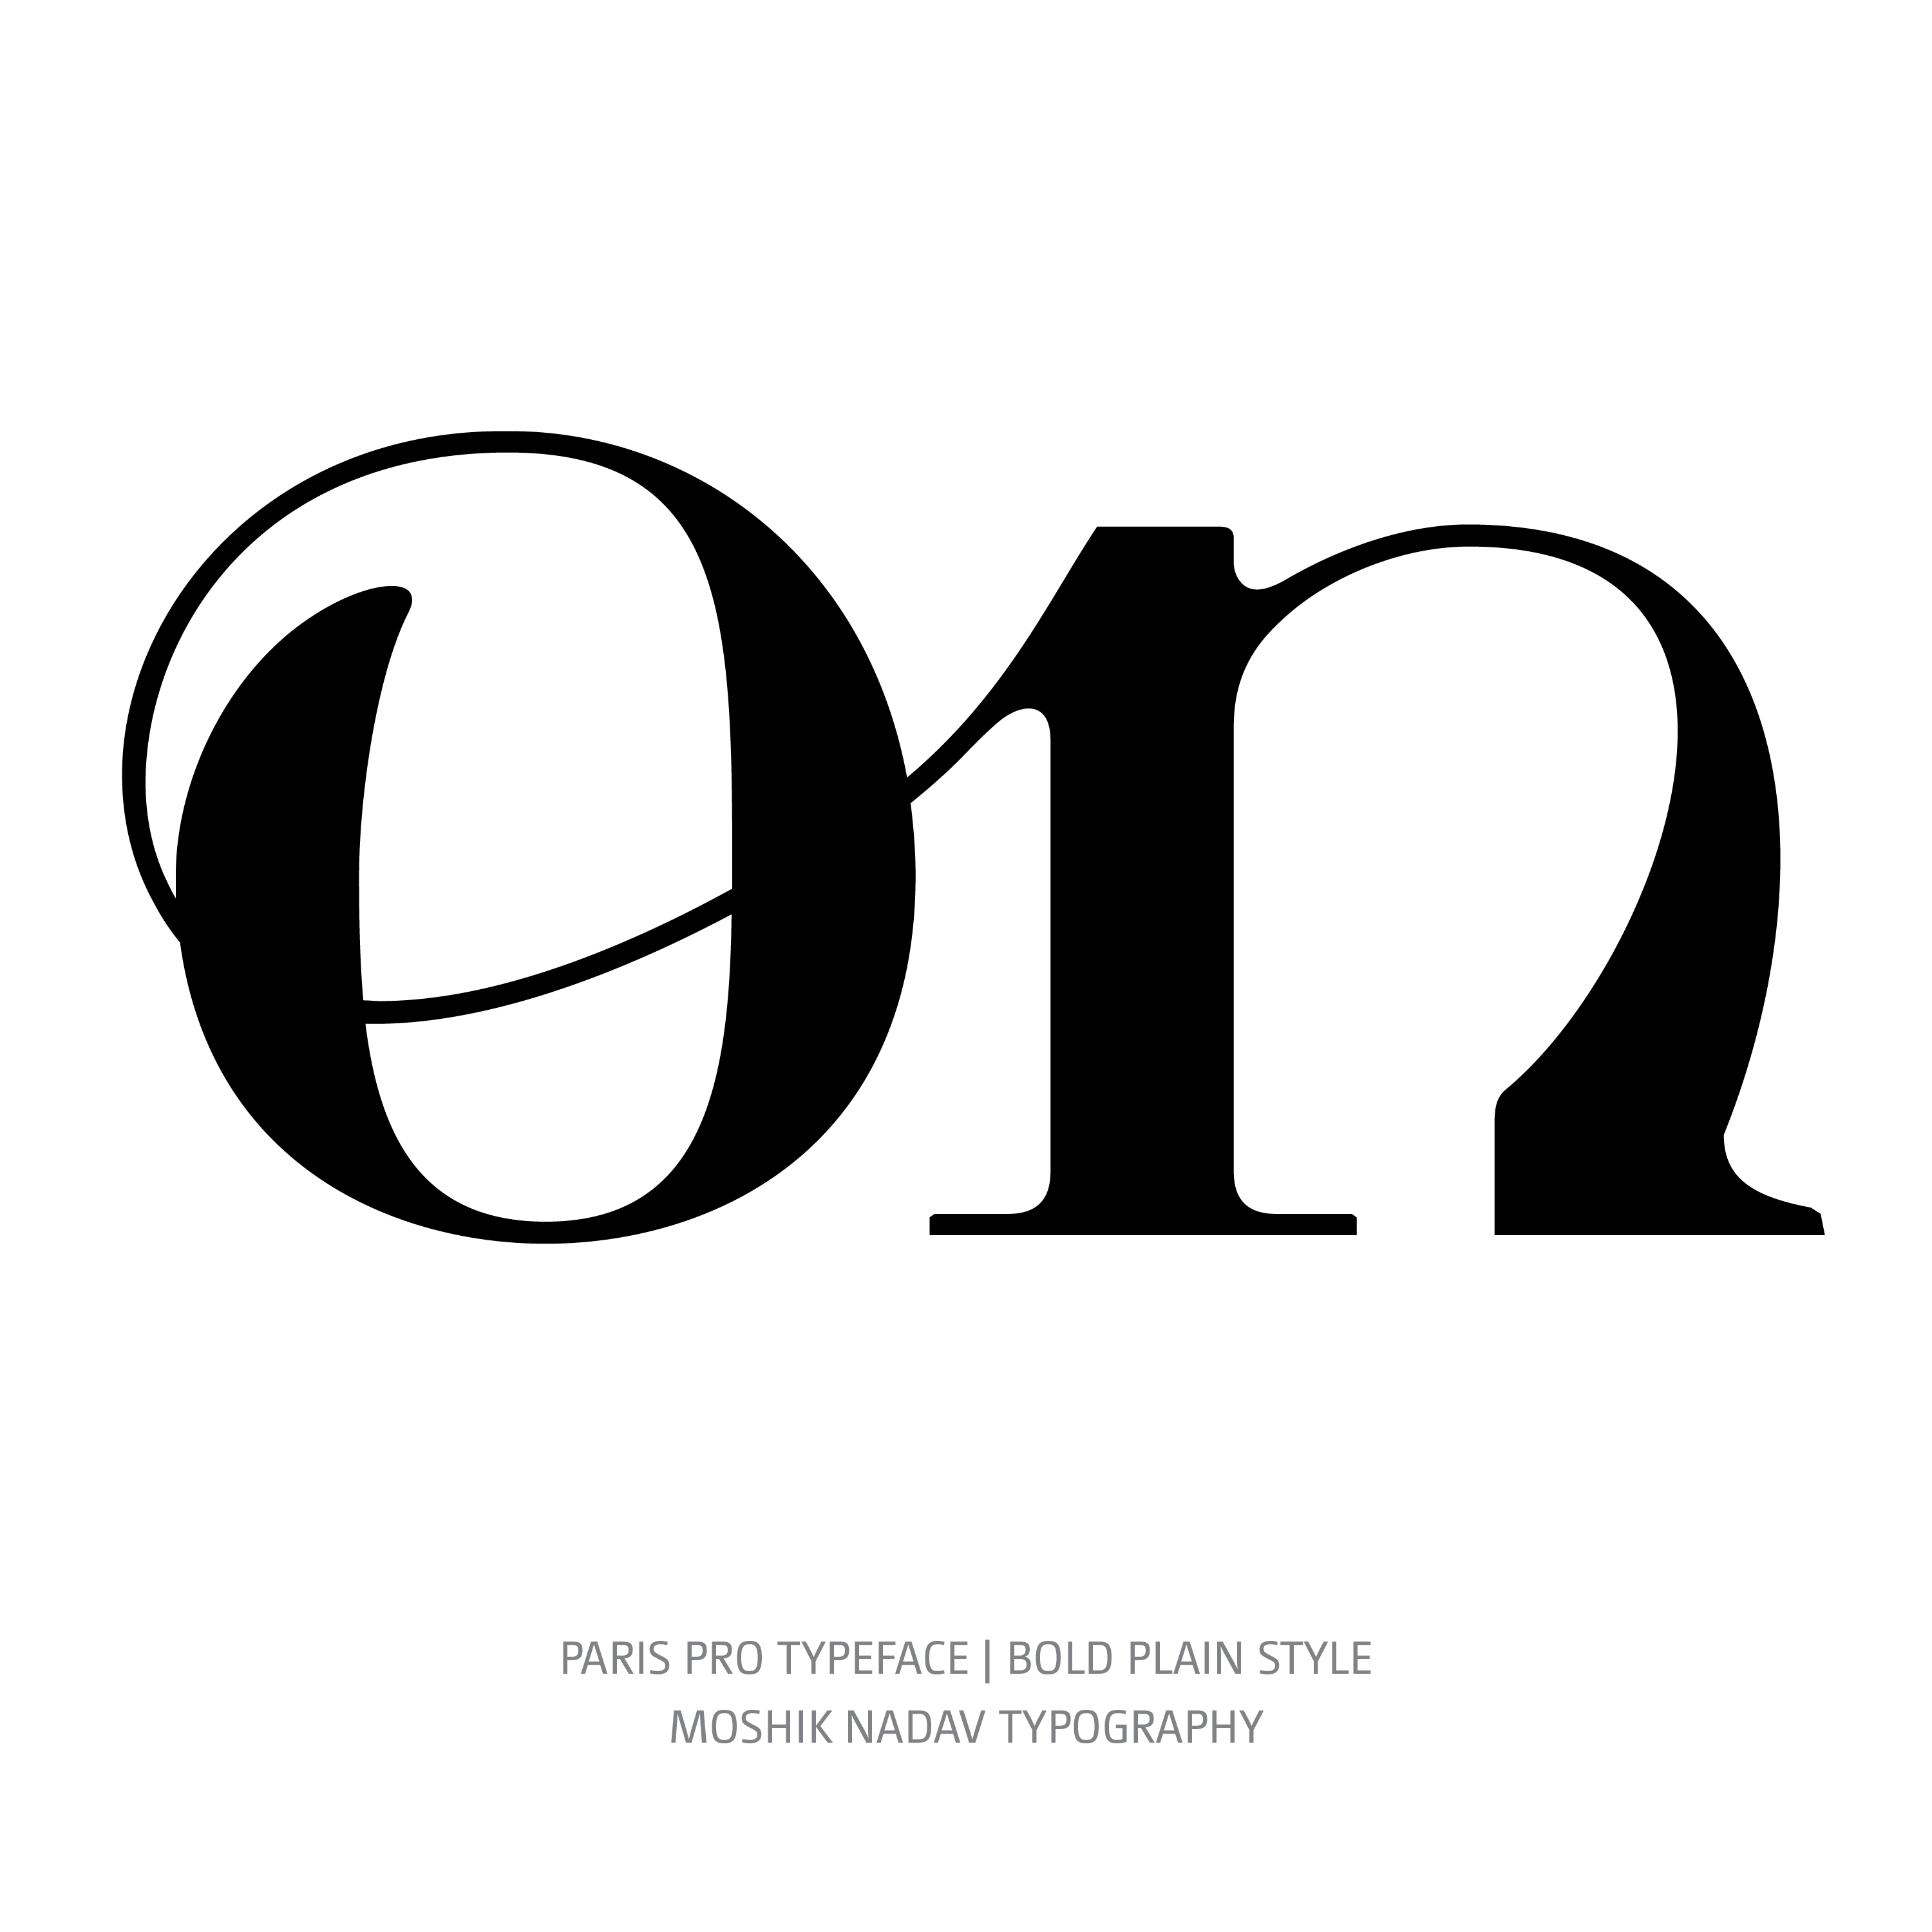 Paris Pro Typeface Bold on ligature